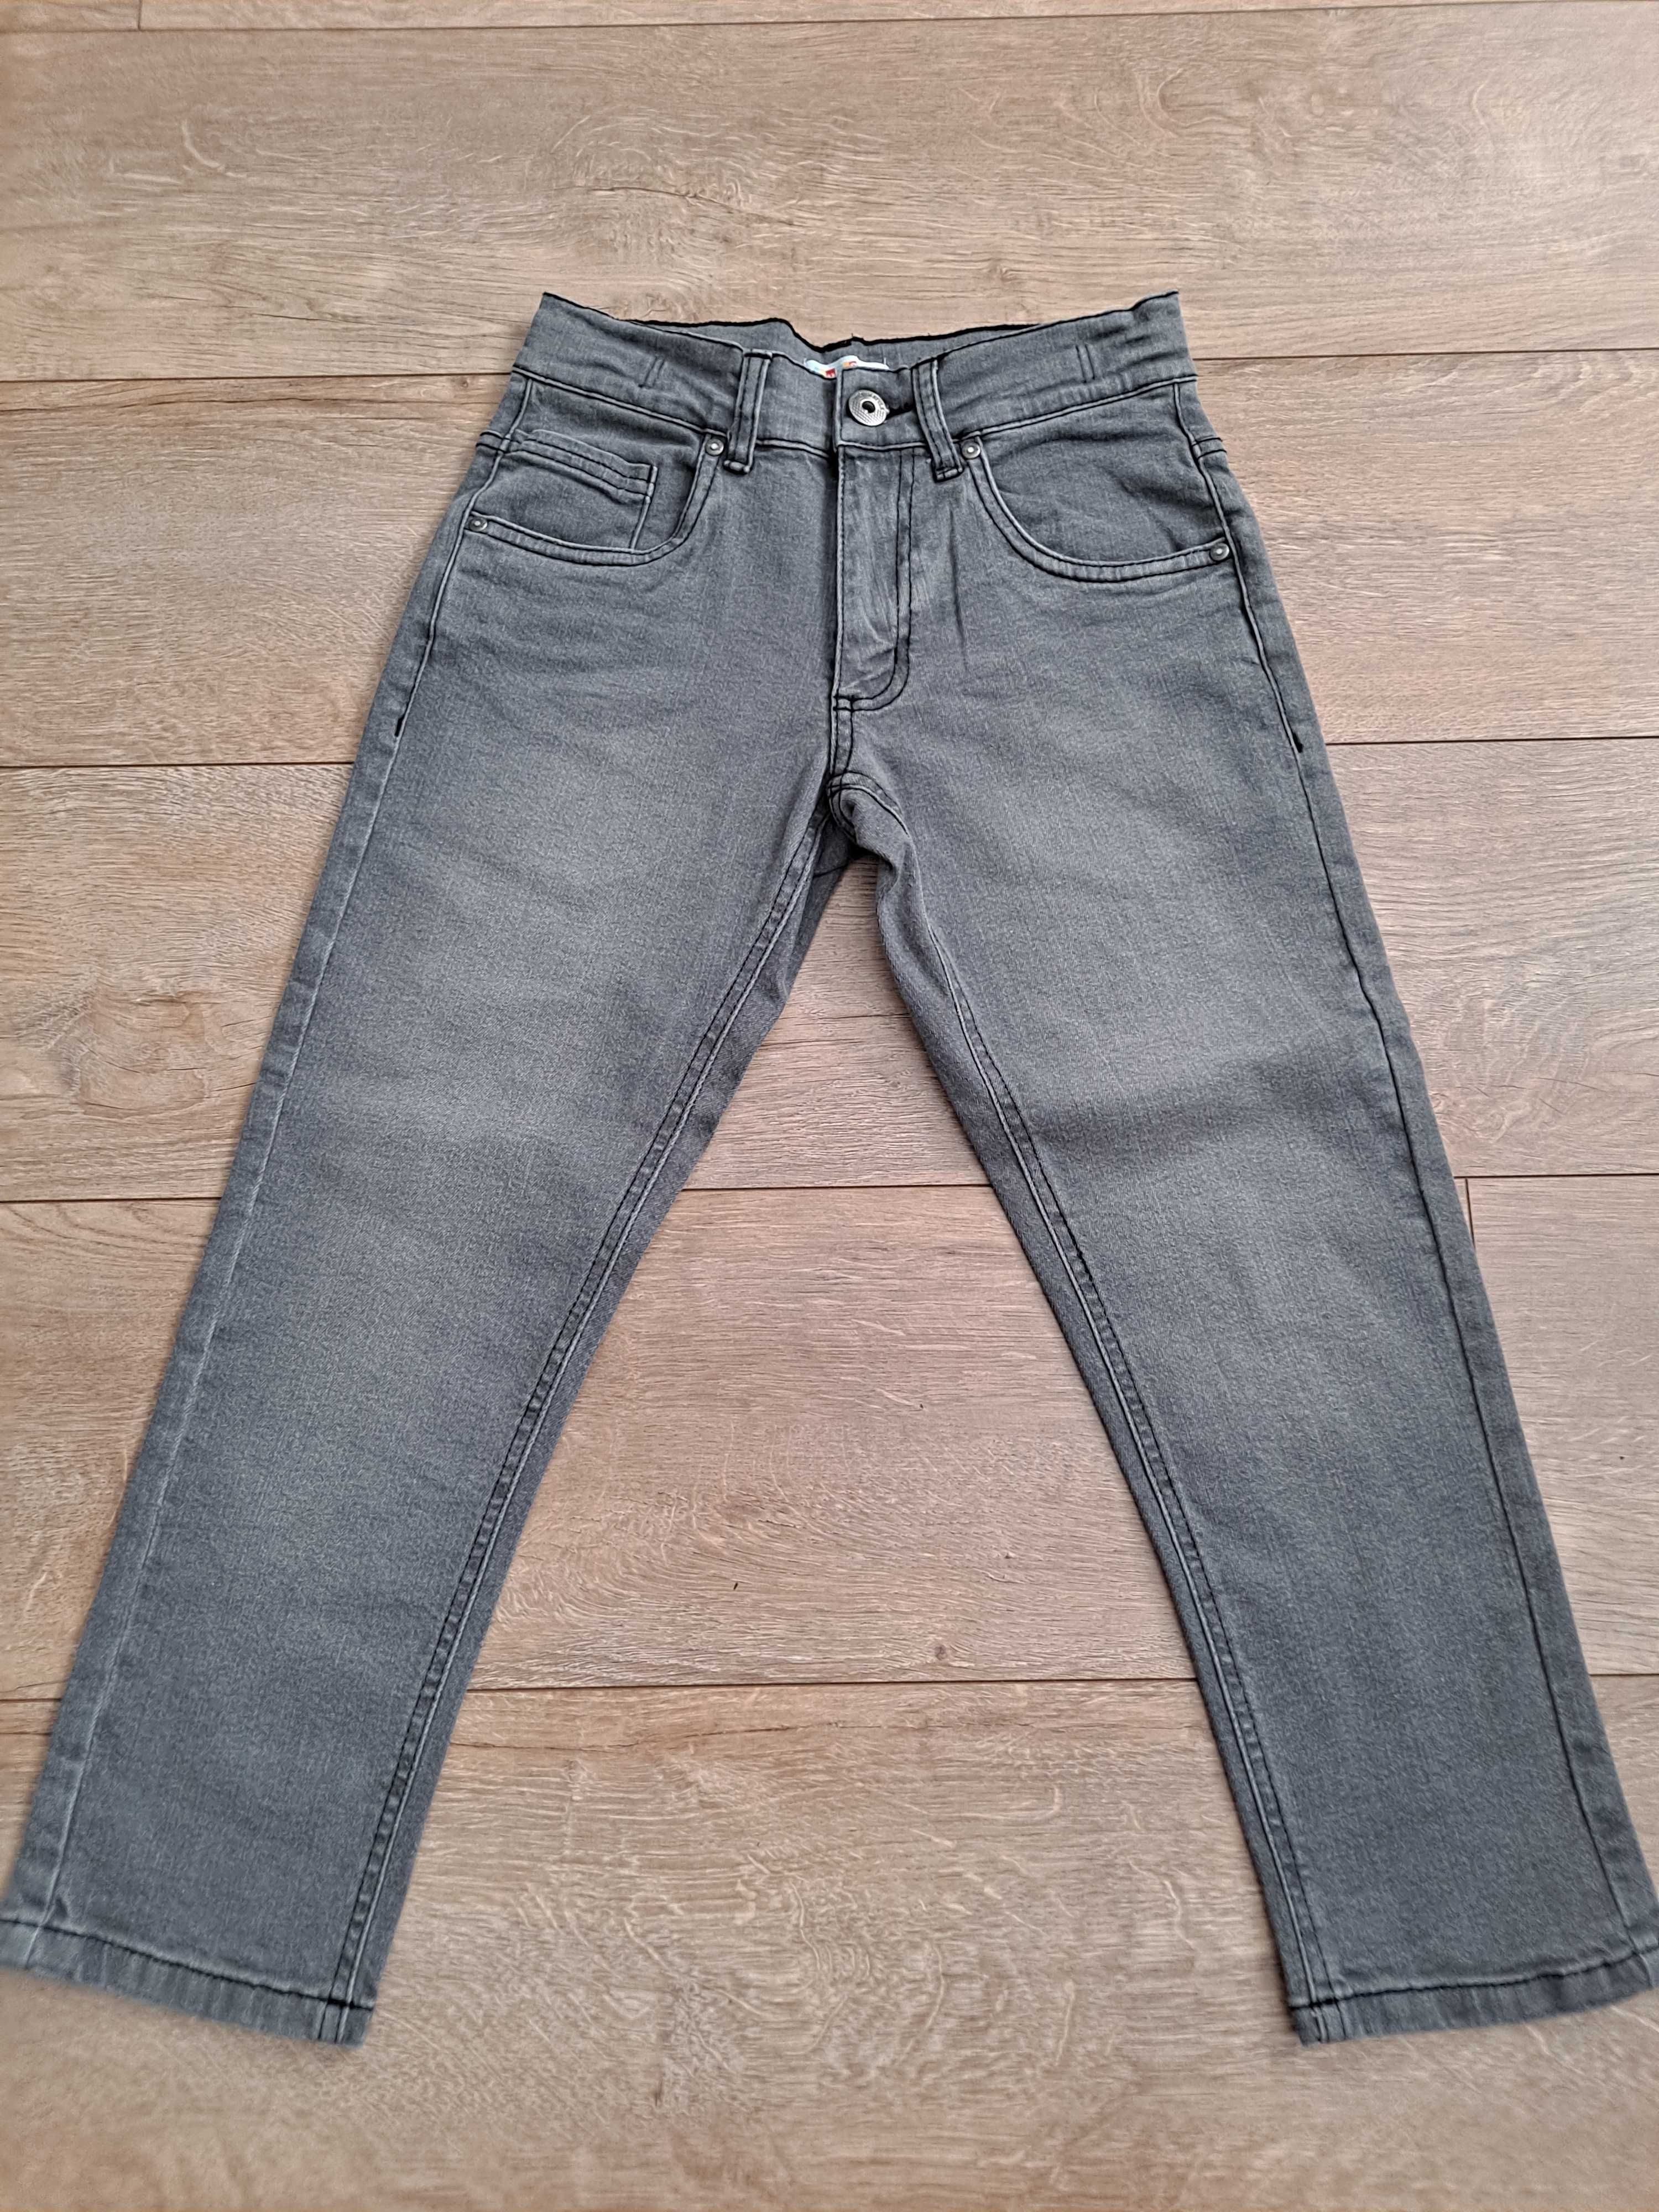 Spodnie szare jeansowe r. 122-128